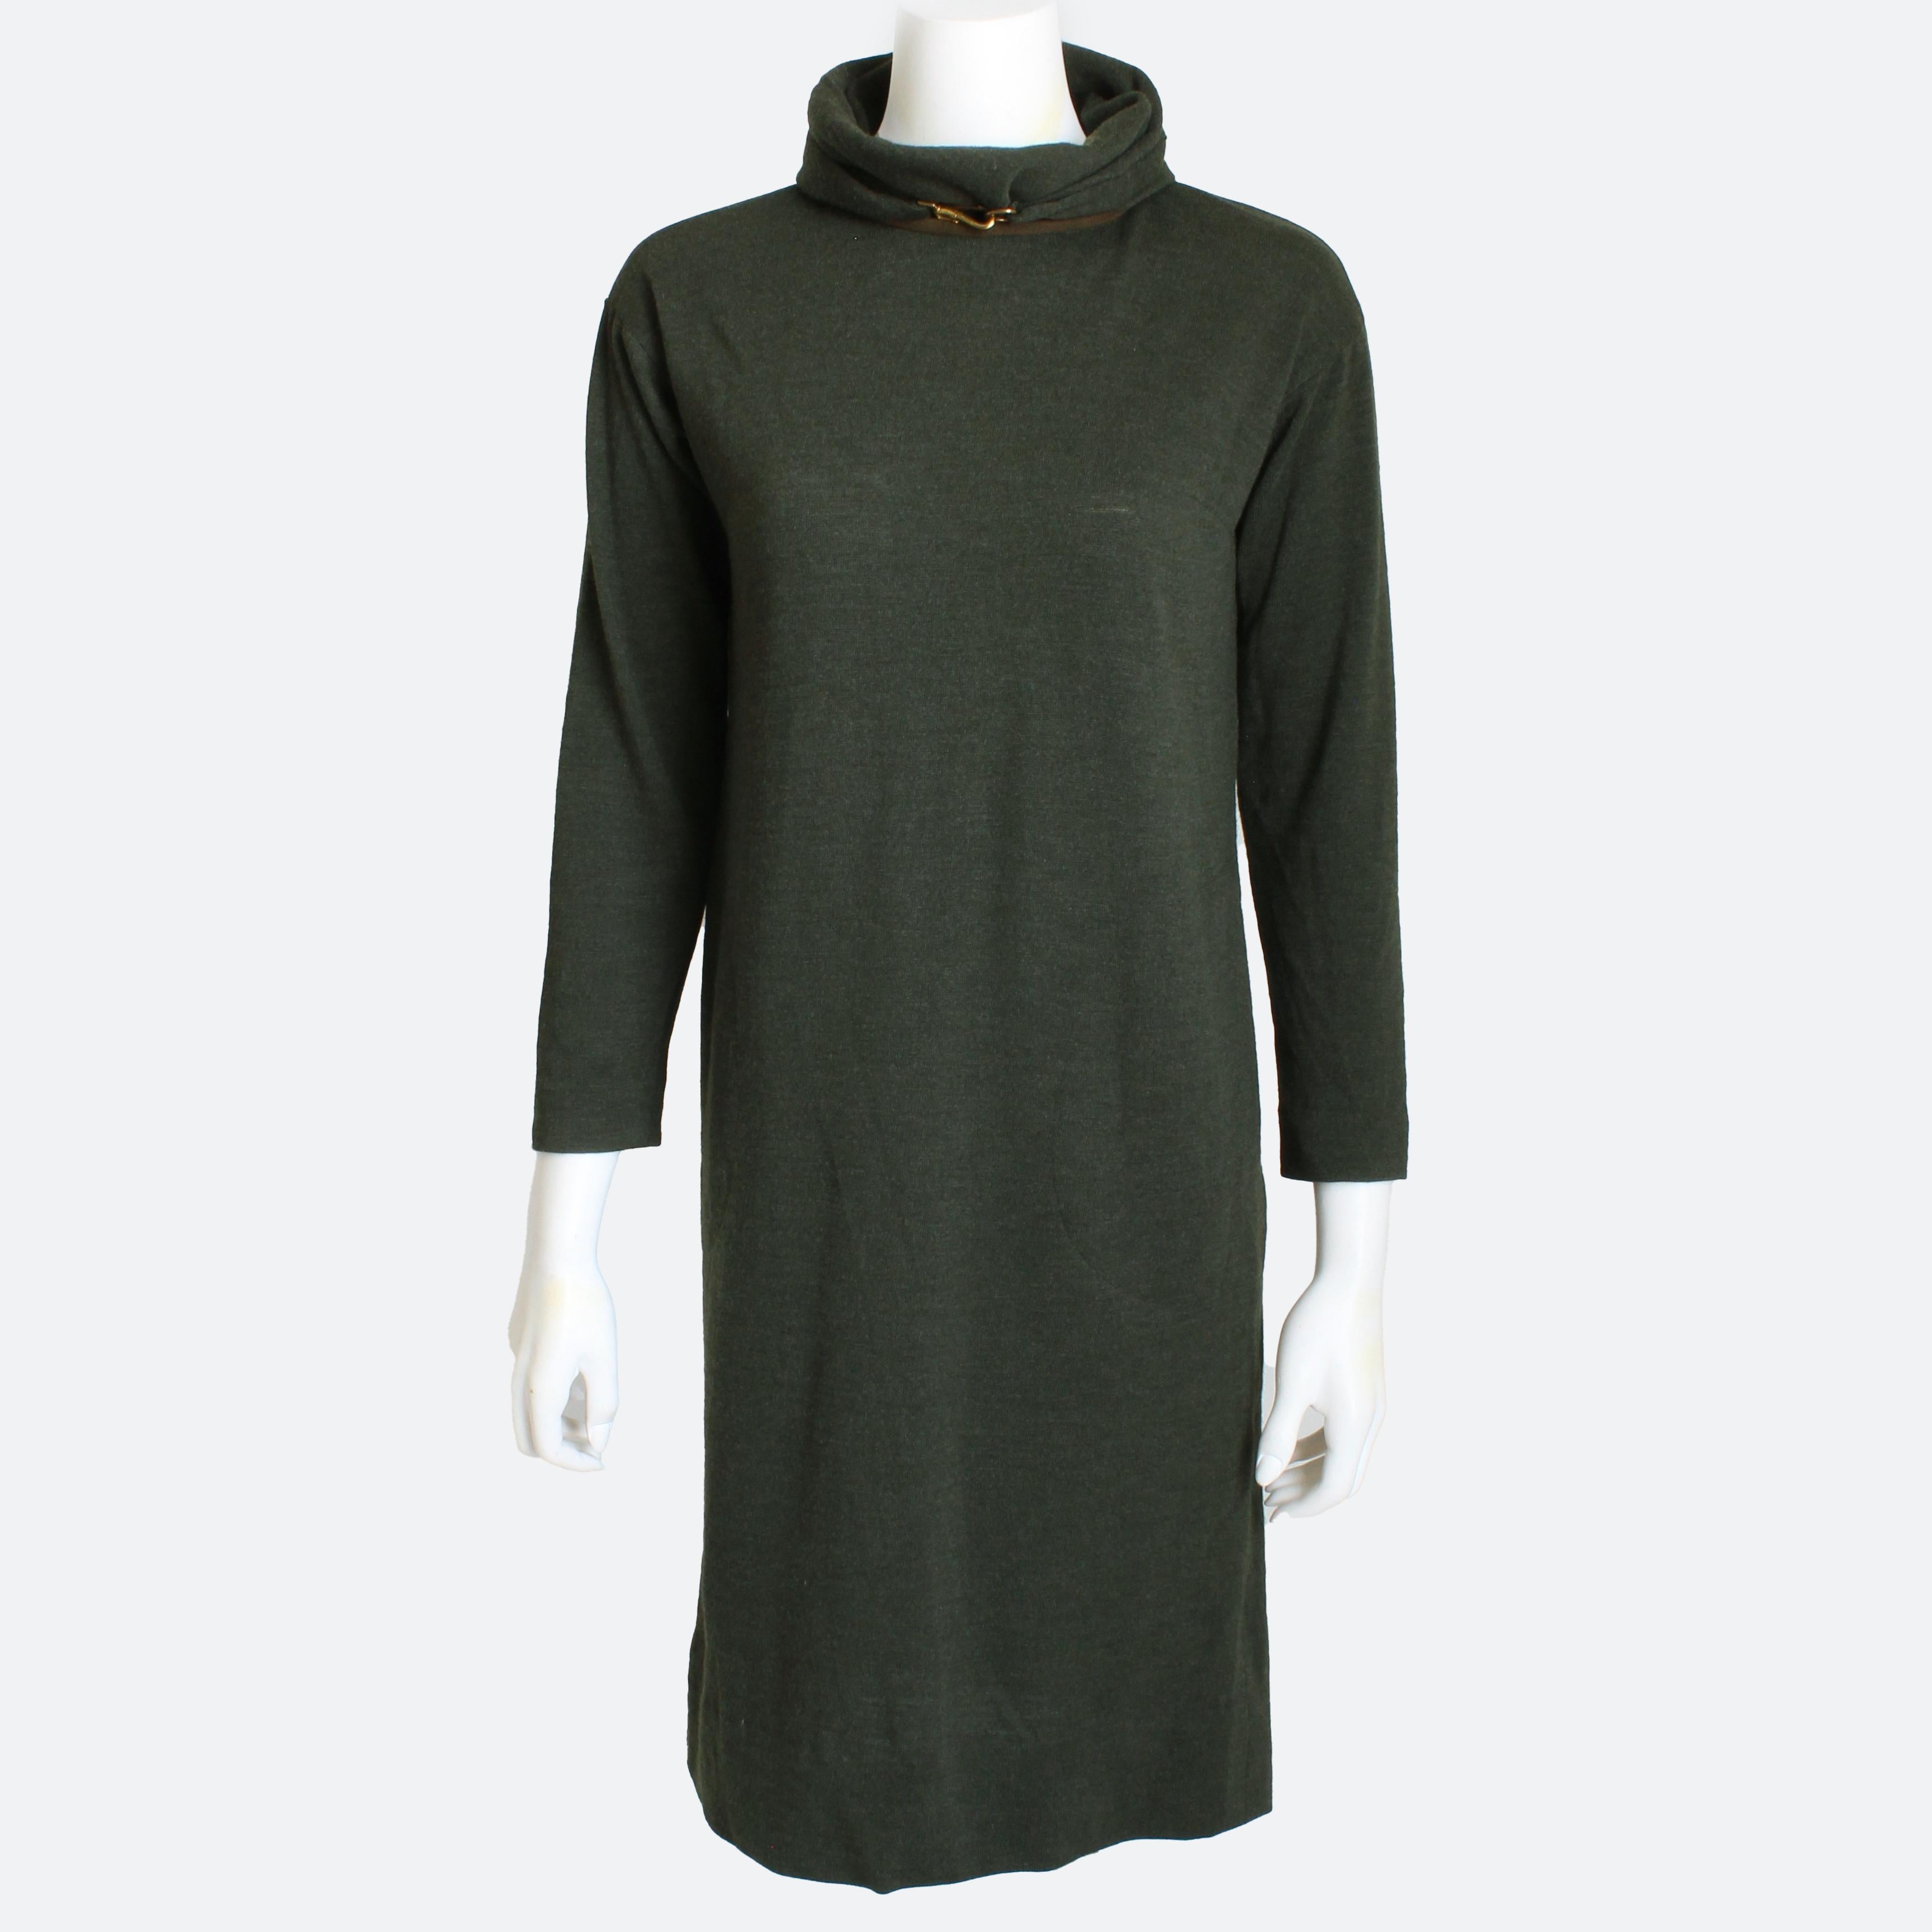 Robe en laine douce de Bonnie Cashin pour Sills avec col, garniture en daim et fermoir ajustable pour laisse de chien, probablement fabriquée dans les années 60.  Confectionné dans un tricot de laine teintée en vert Canously, il est doté d'un